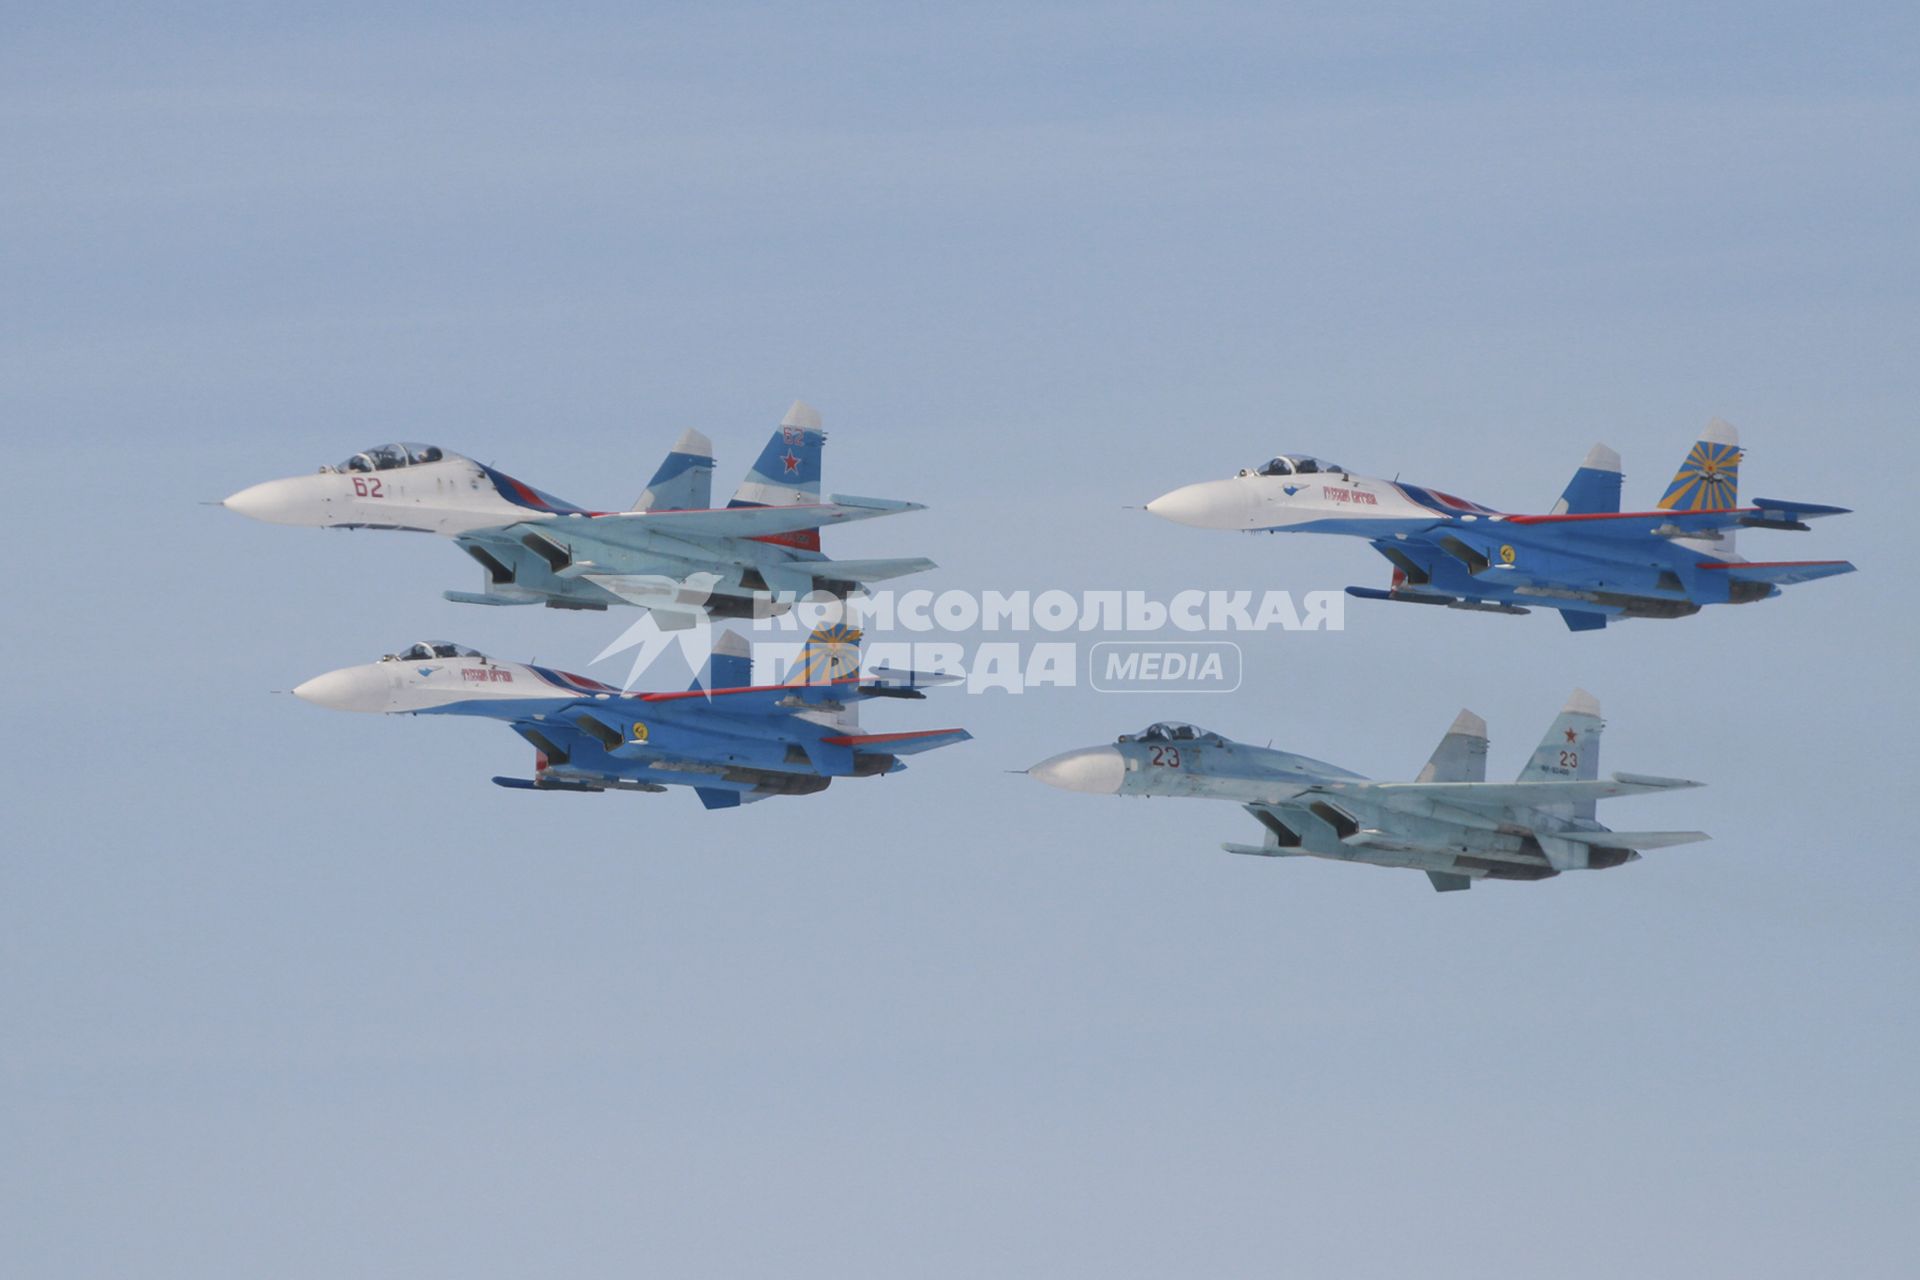 Барнаул. Авиашоу. На снимке: пилотажные группы `Соколы России` Су-27 и `Русские Витязи` Су-27.